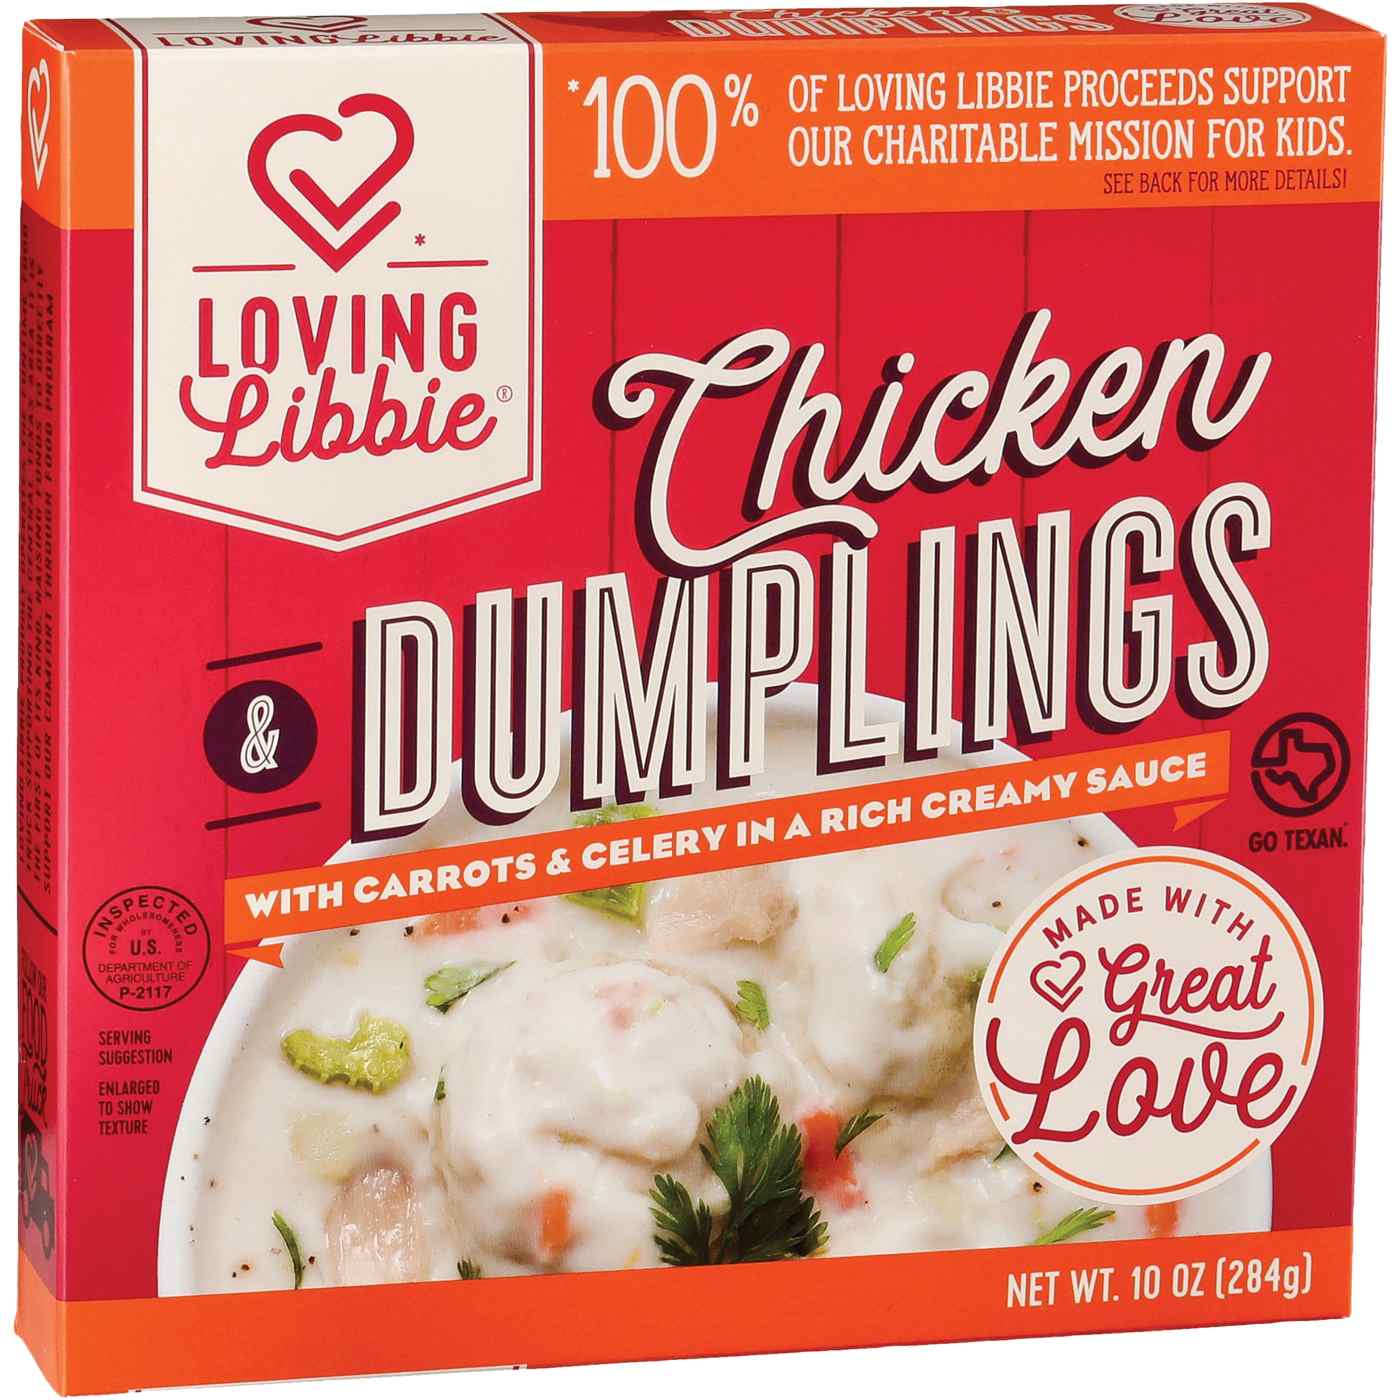 Loving Libbie Chicken & Dumplings Frozen Meal; image 1 of 2